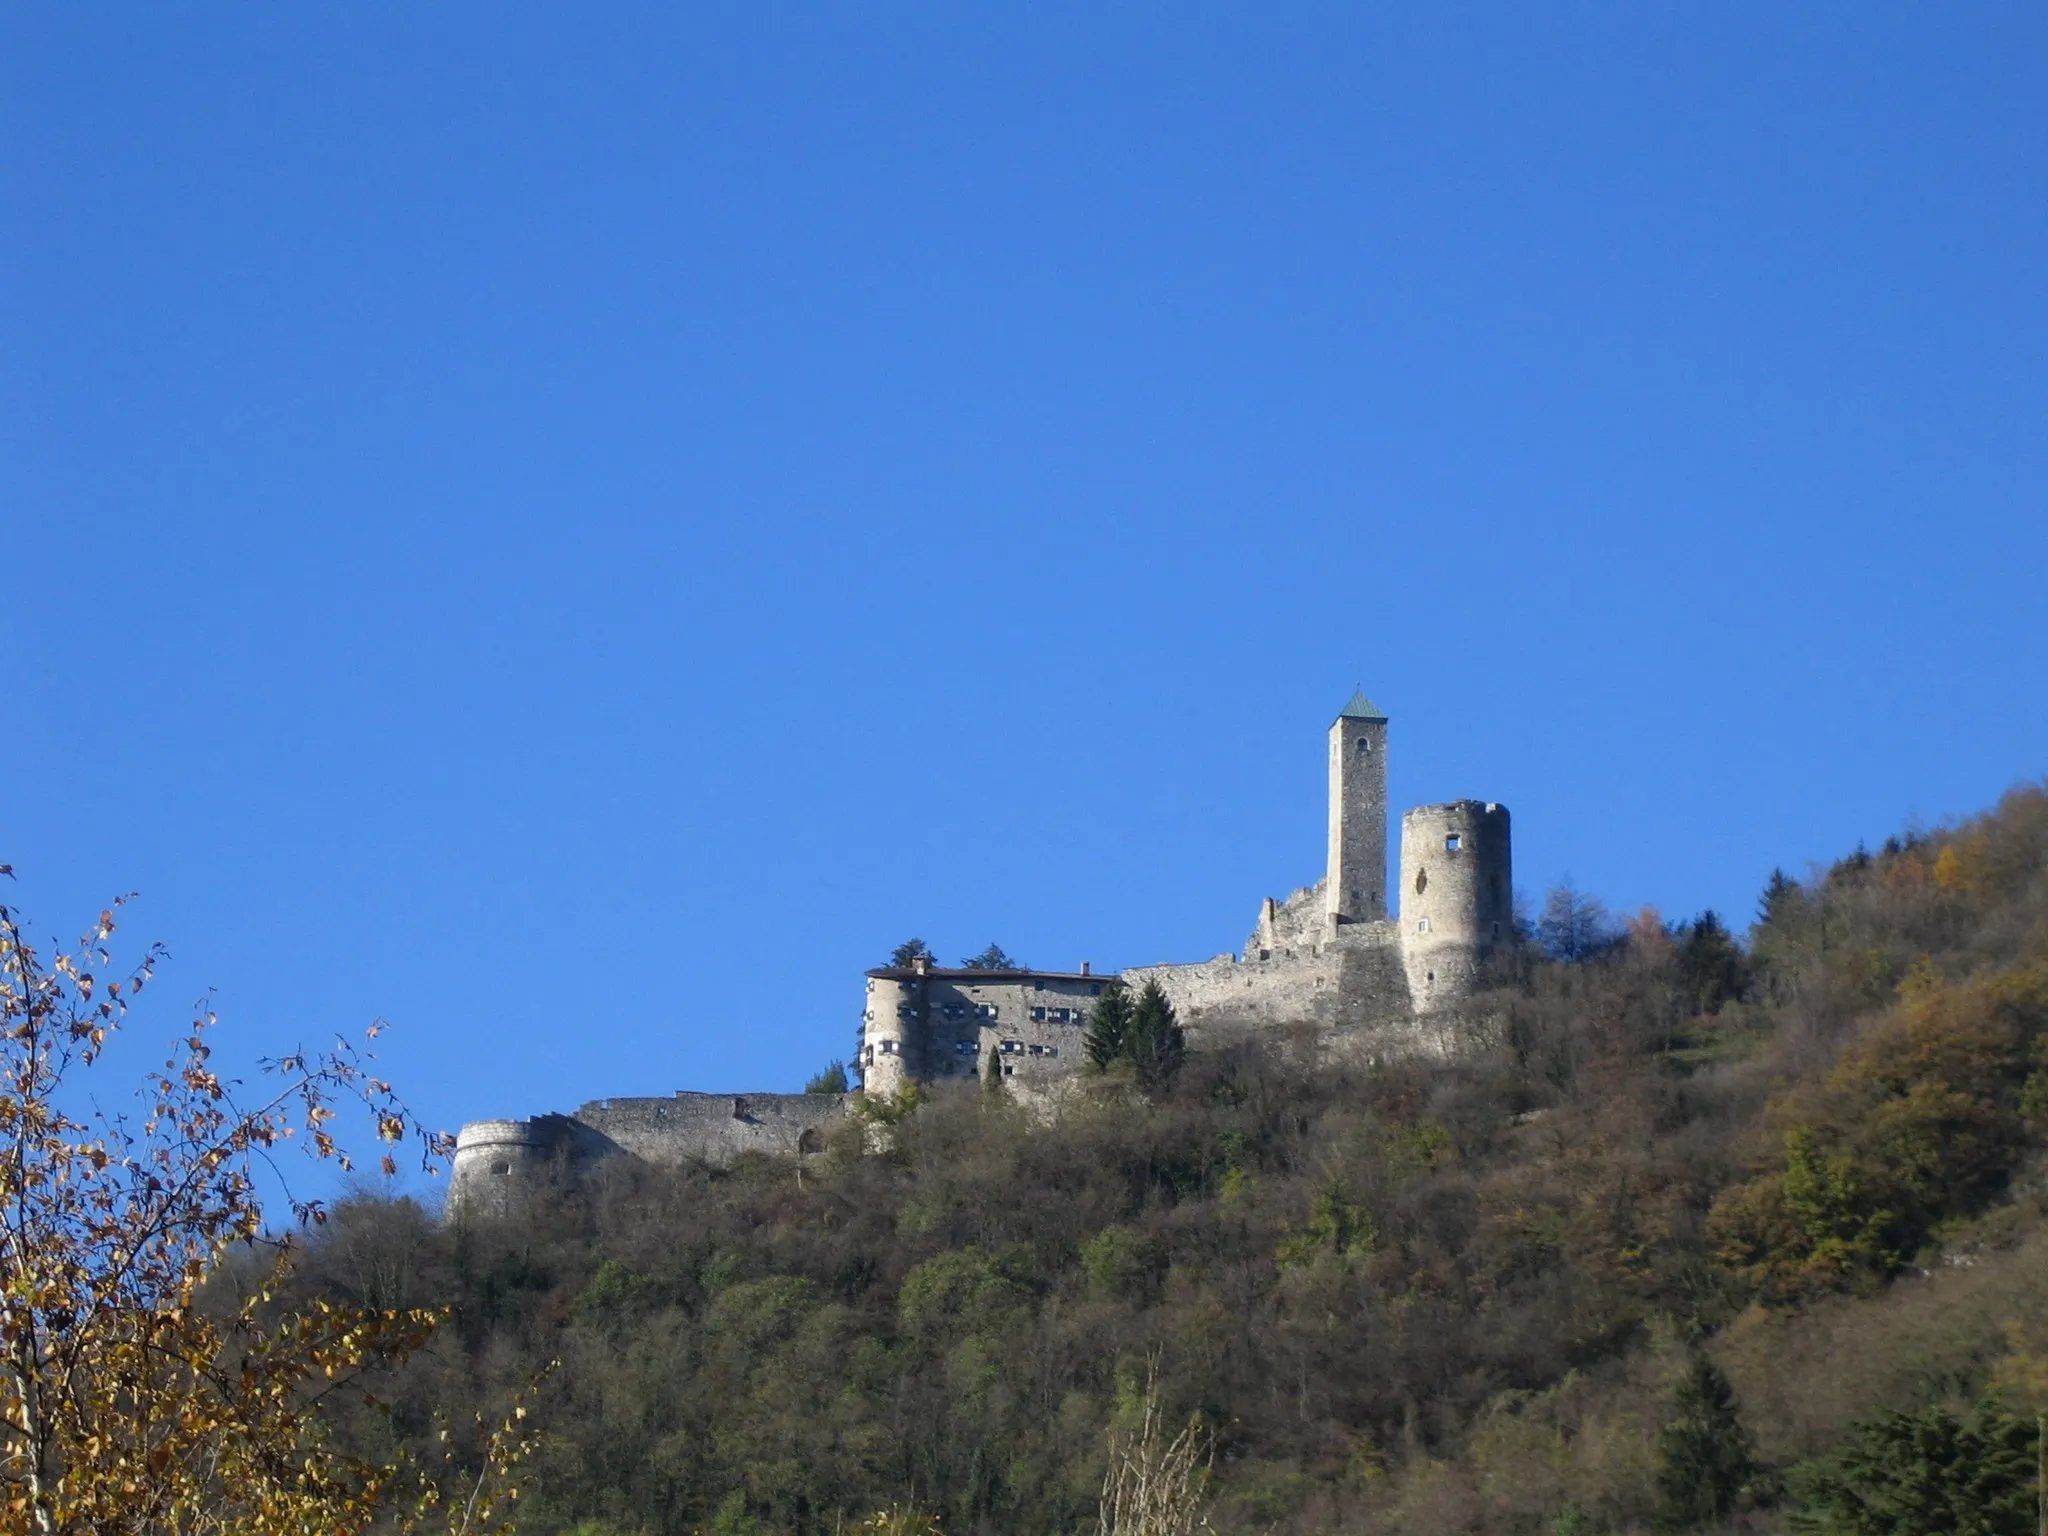 Immagine di Trentino